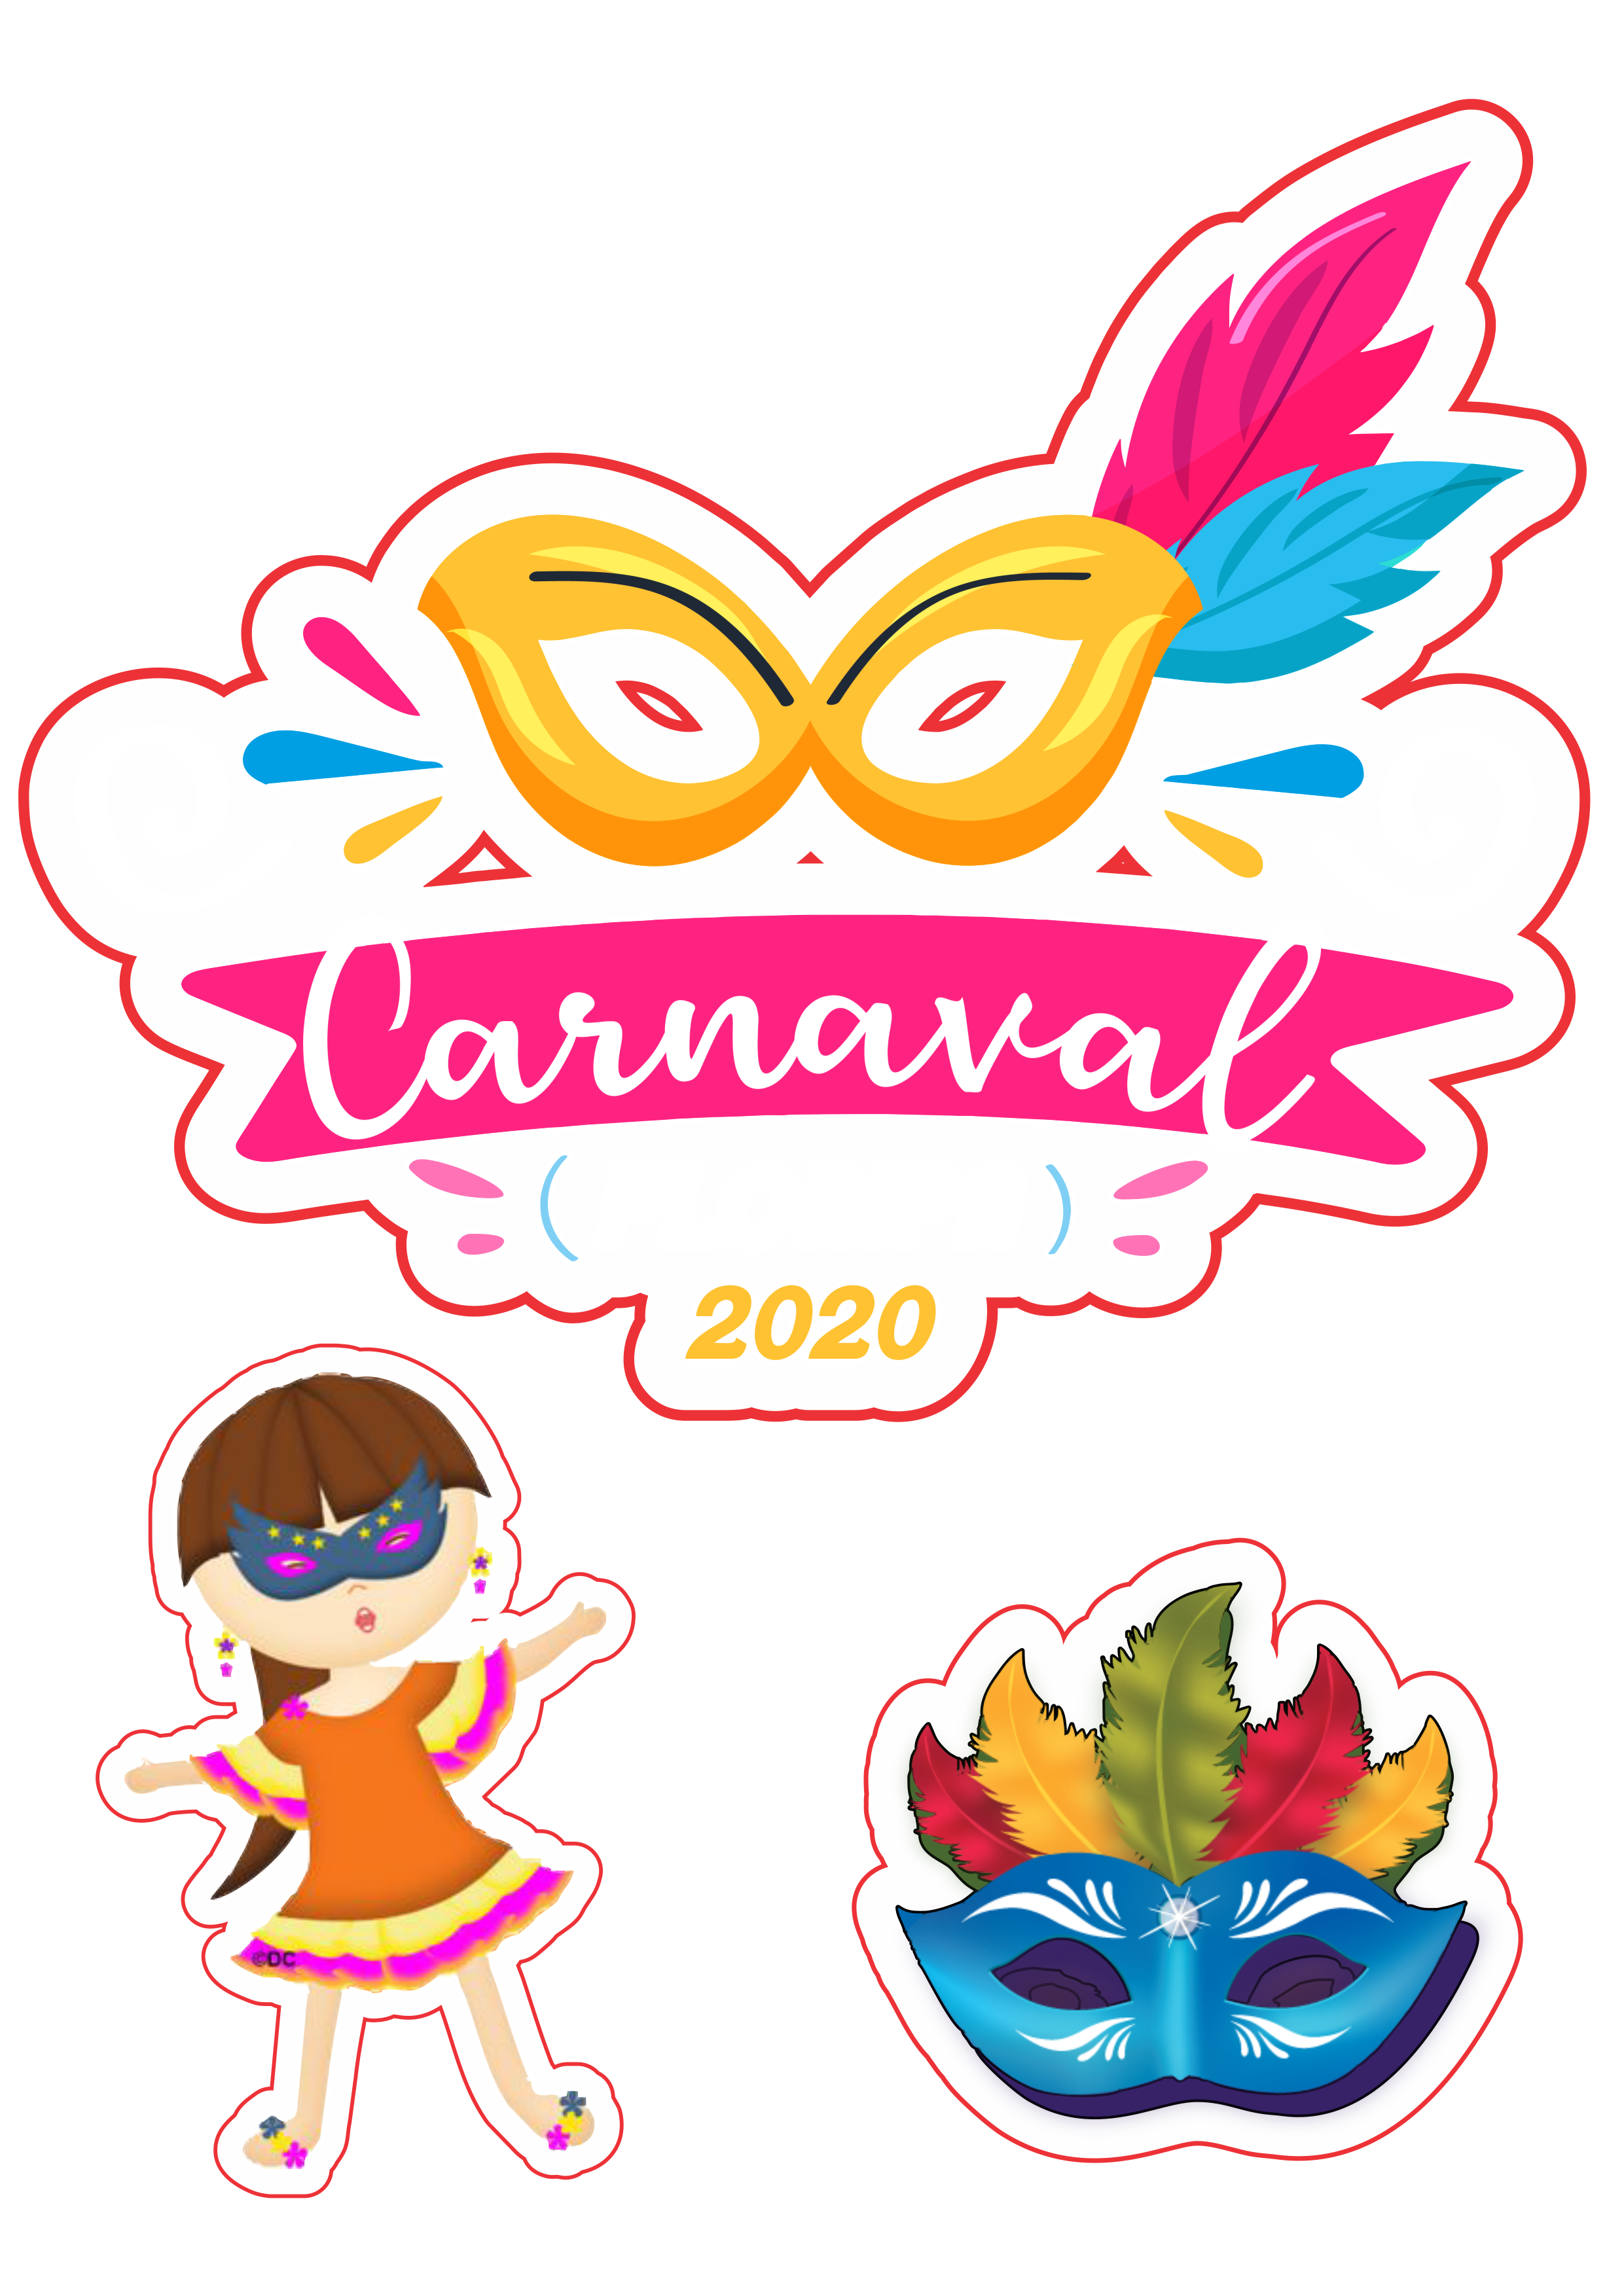 Centro de mesa carnaval 2020 png